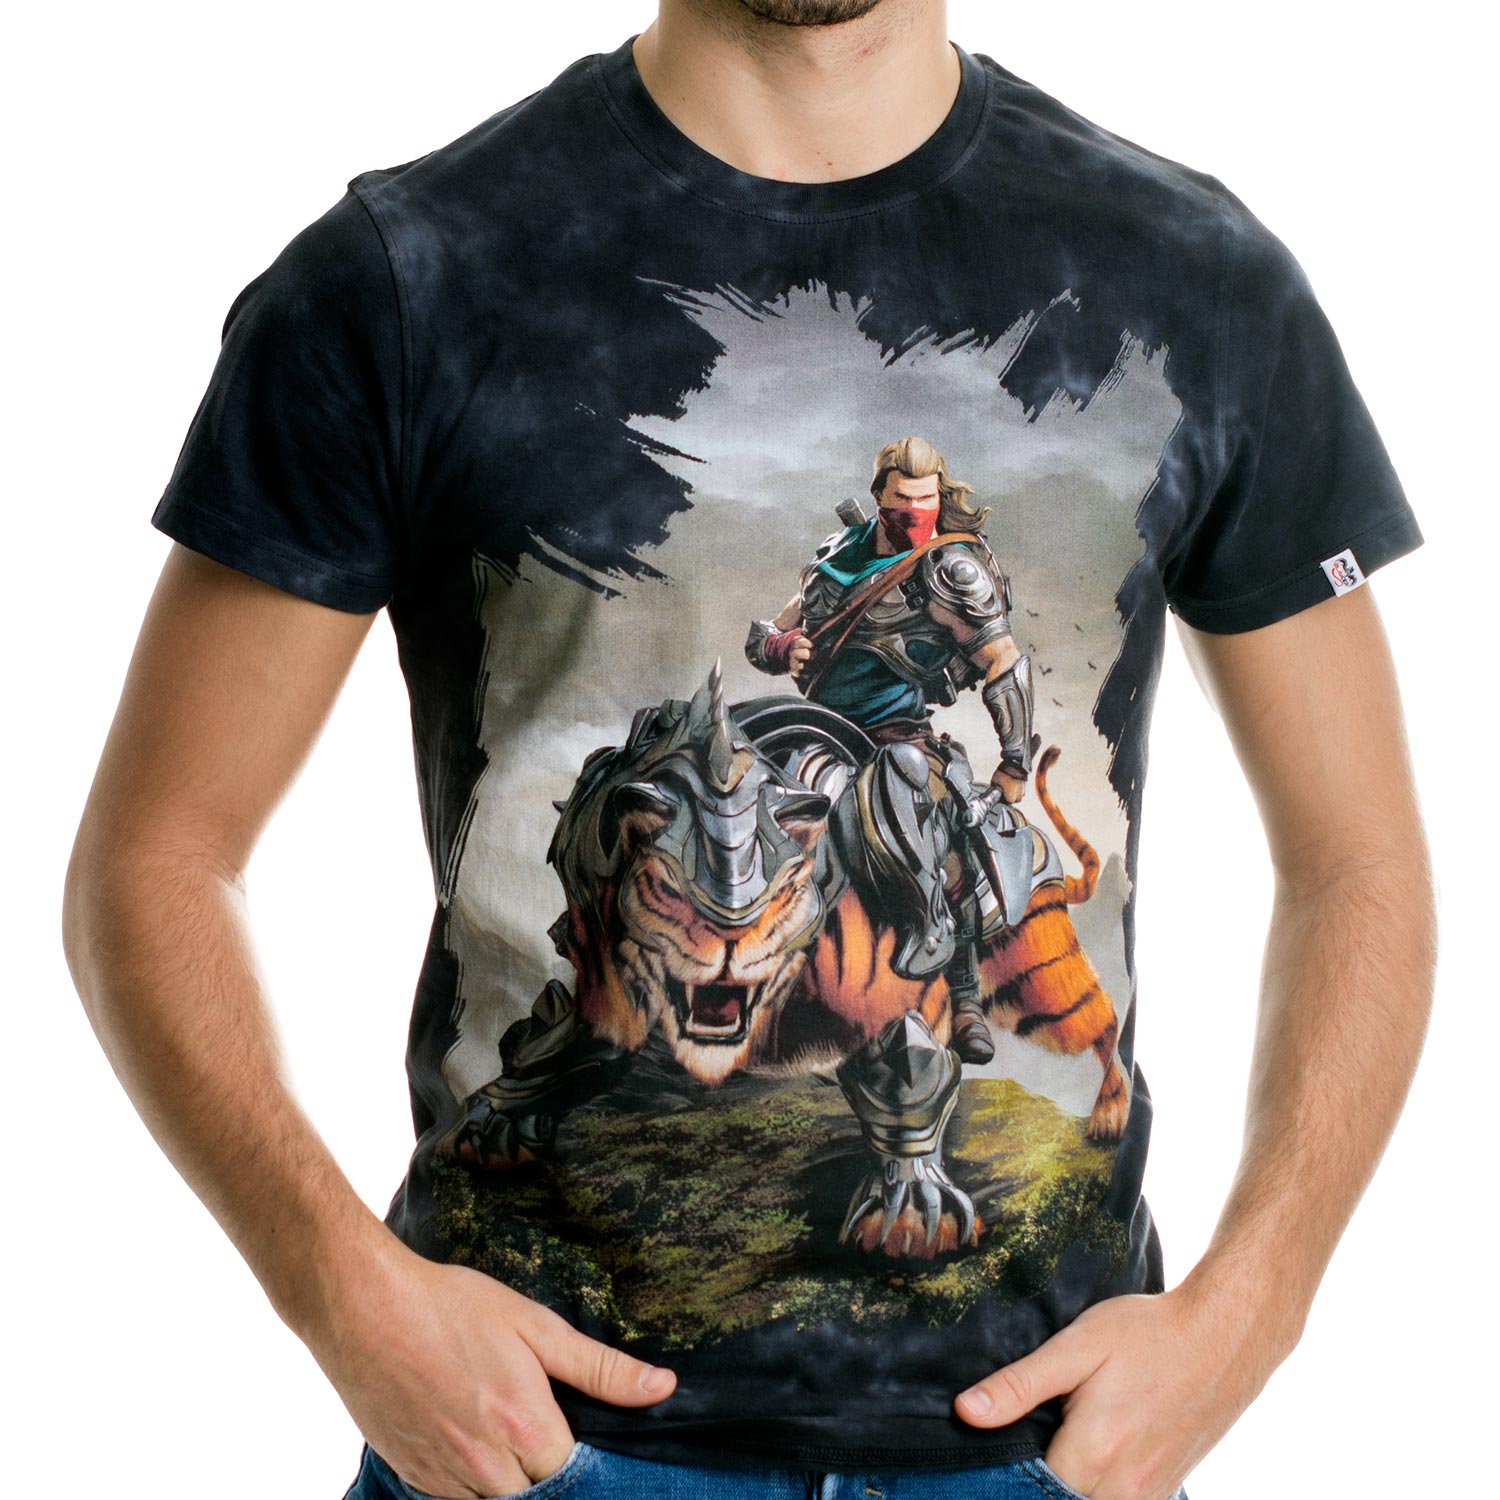 La Camiseta Battlecat tiene un dibujo original de un valiente guerrero a lomos de un tigre acorazado.